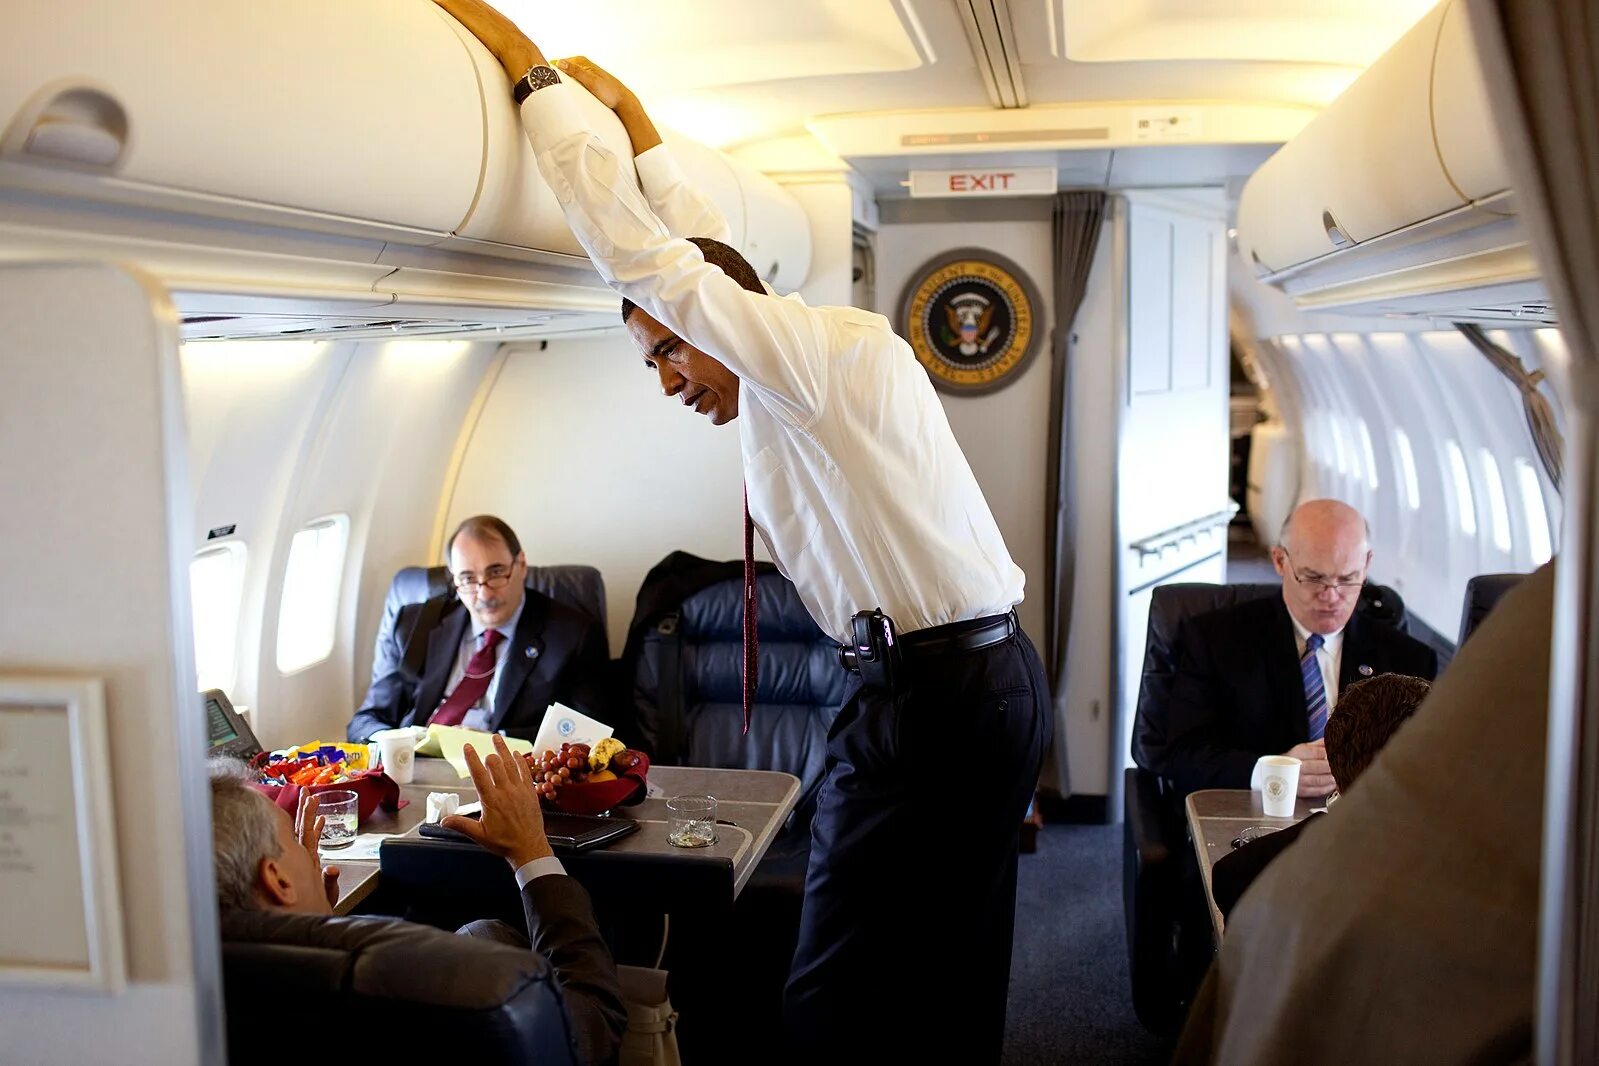 Борт 1 президента США. Самолет президента США Air Force one. Барак Обама в самолете. Боинг 747 президента США.